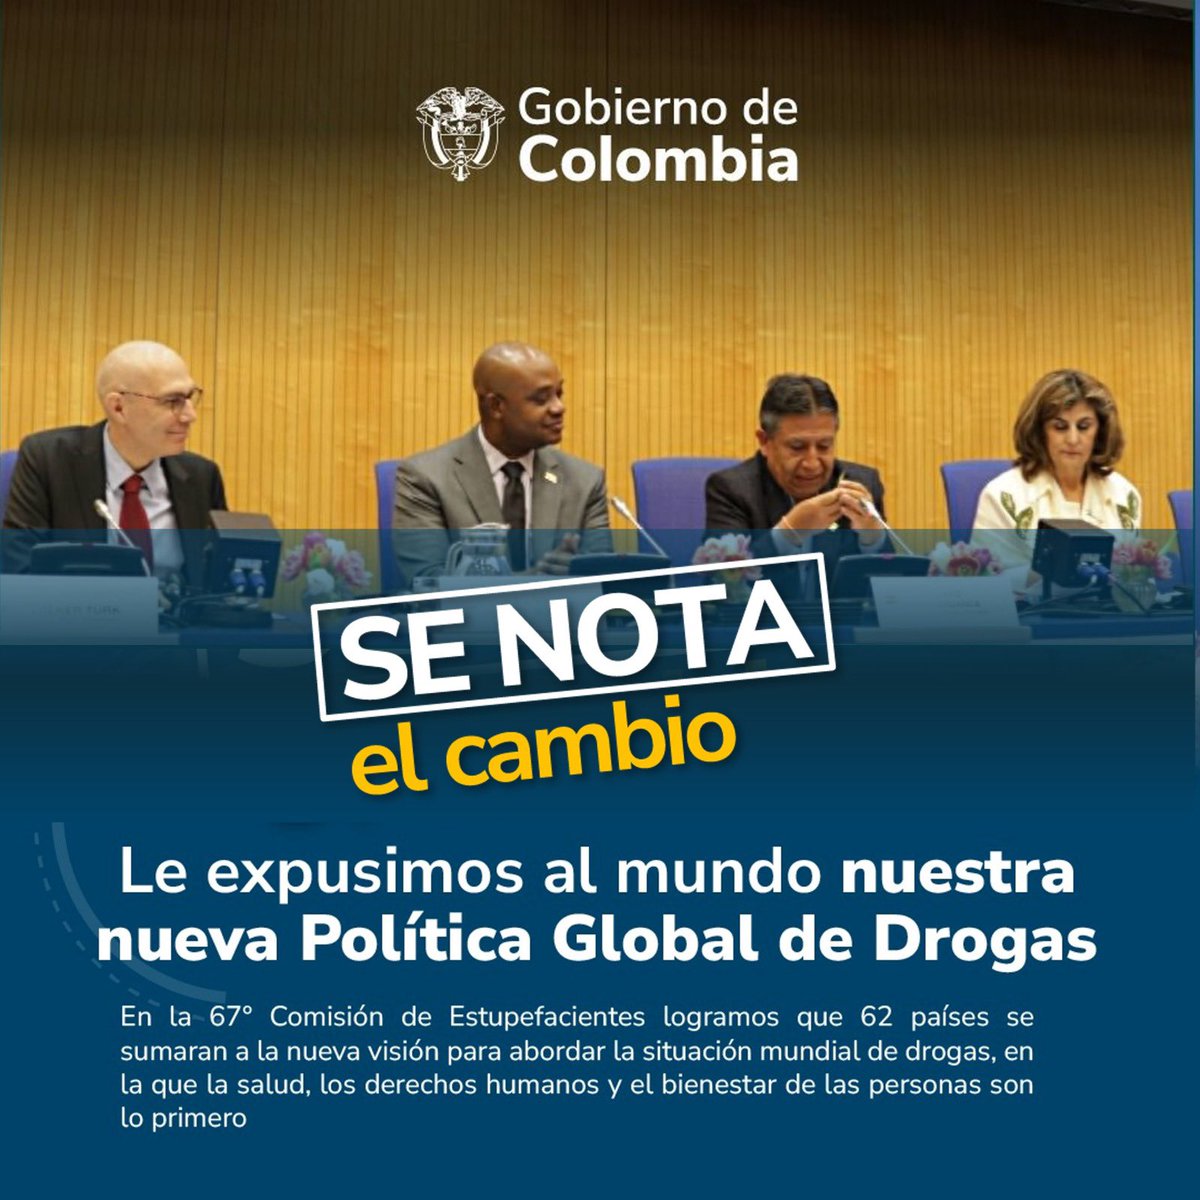 Un total de 62 países se sumaran a la nueva visión de Colombia para abordar la situación mundial de drogas, en donde la salud, los derechos humanos y el bienestar de las personas son lo primero. #SeNotaElCambio